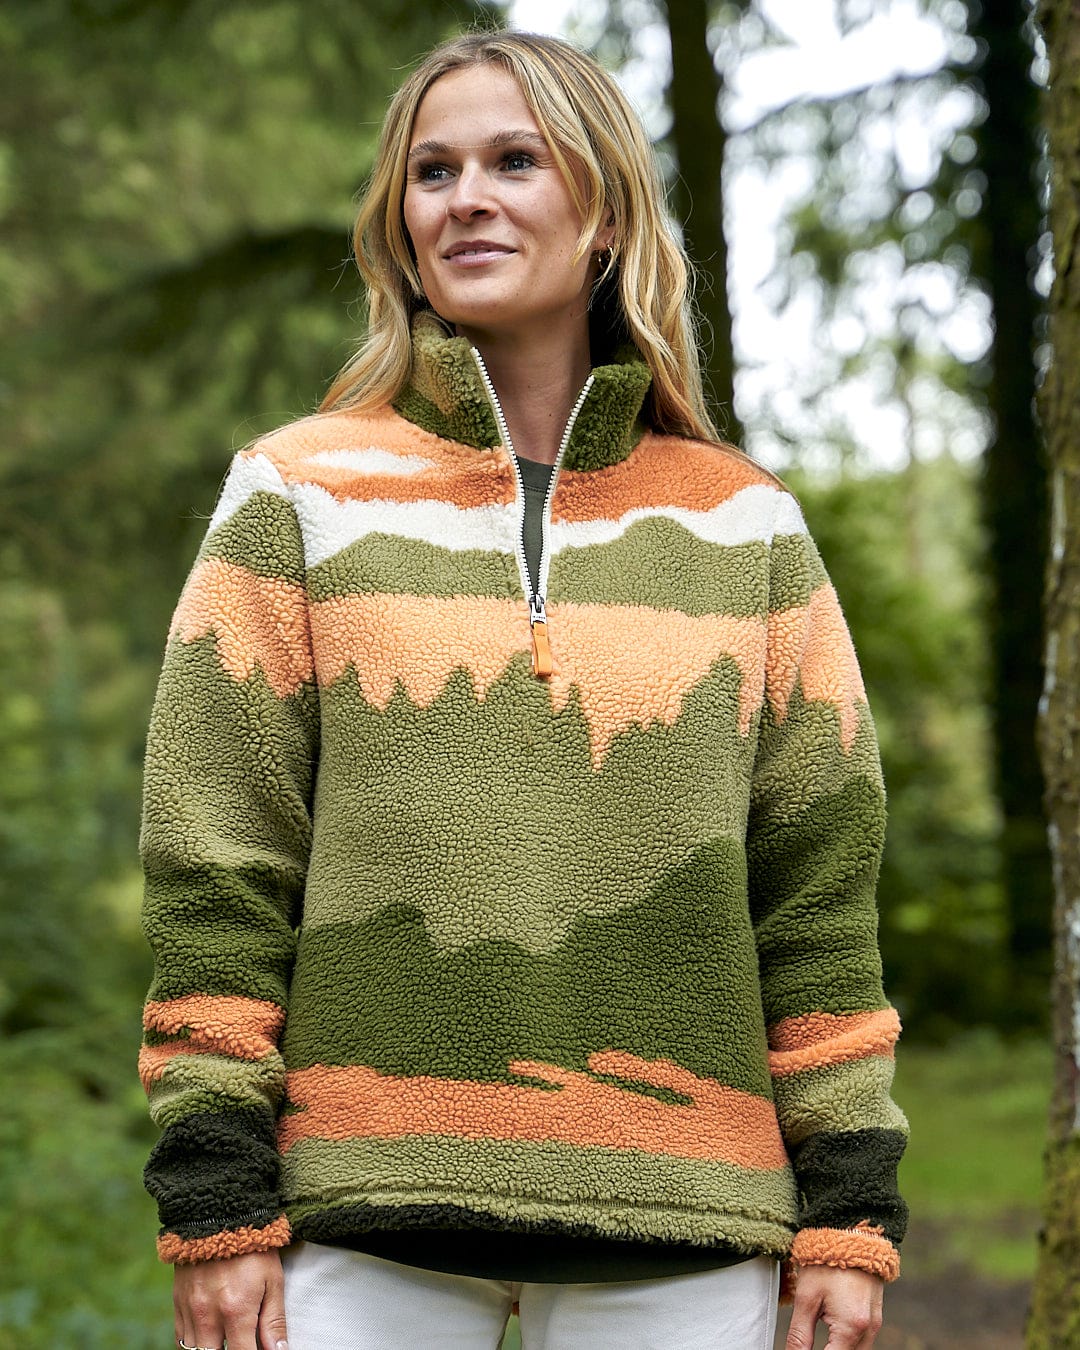 A woman is standing in the woods wearing a Saltrock Mountain Scape - Womens 1/4 Fleece - Orange sweater.